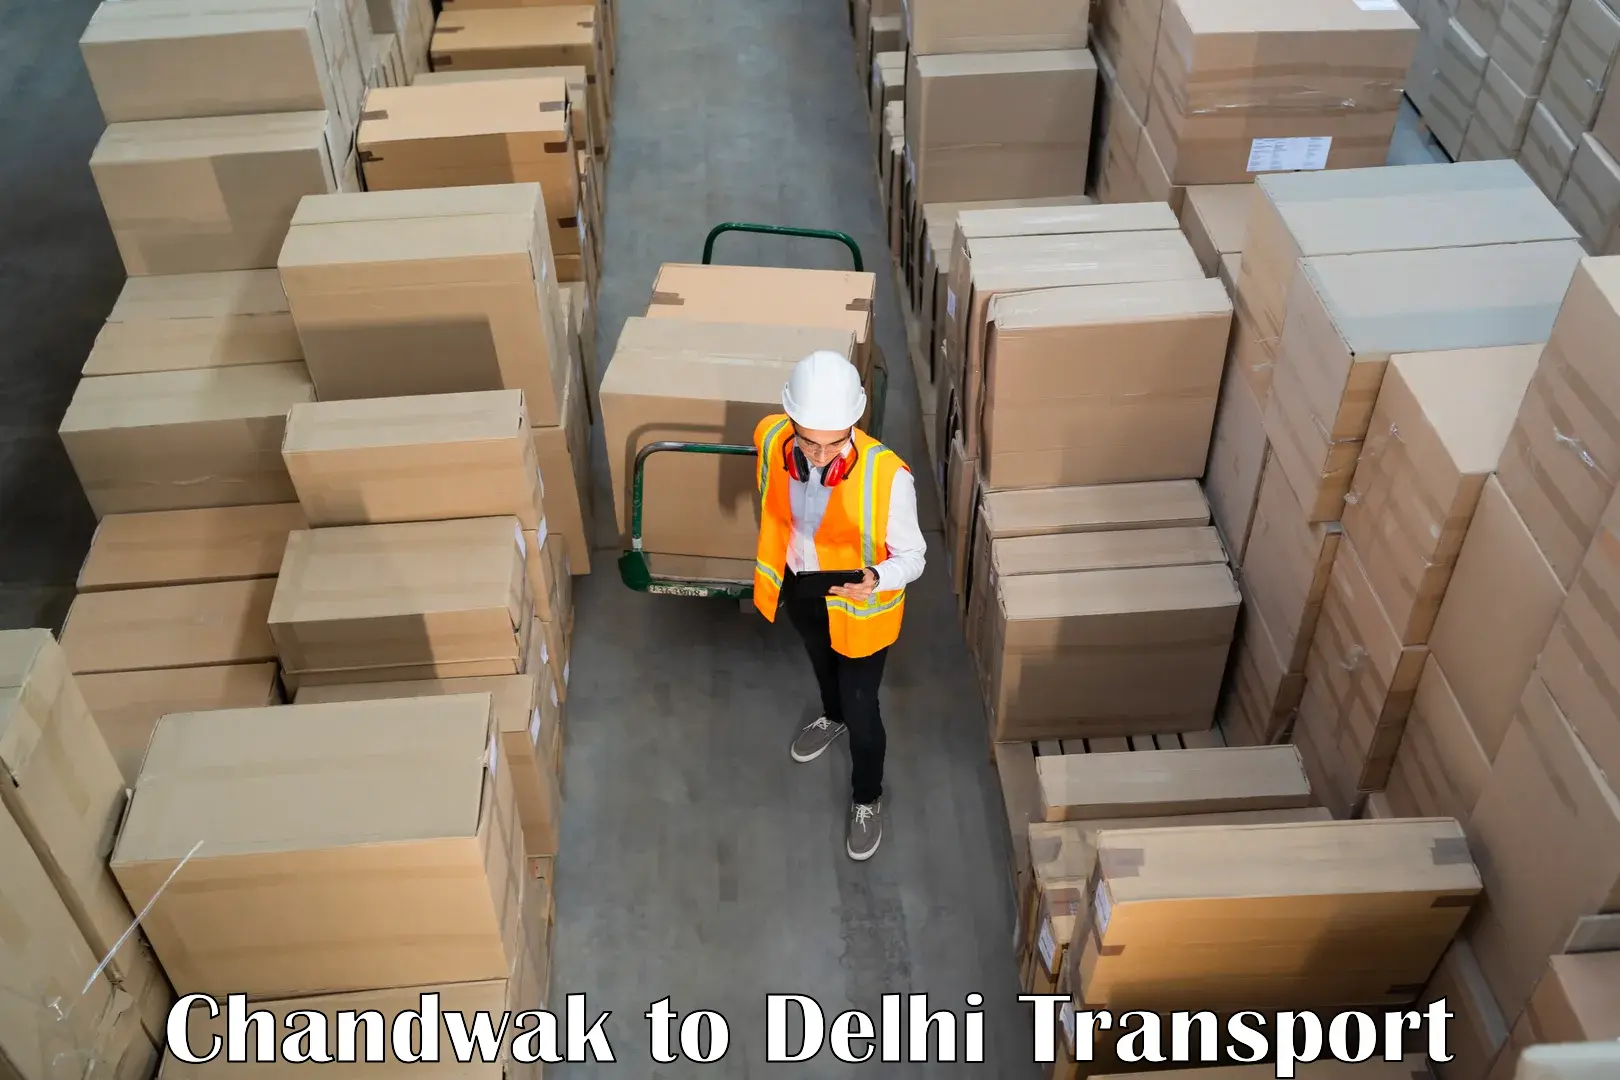 Parcel transport services Chandwak to Delhi